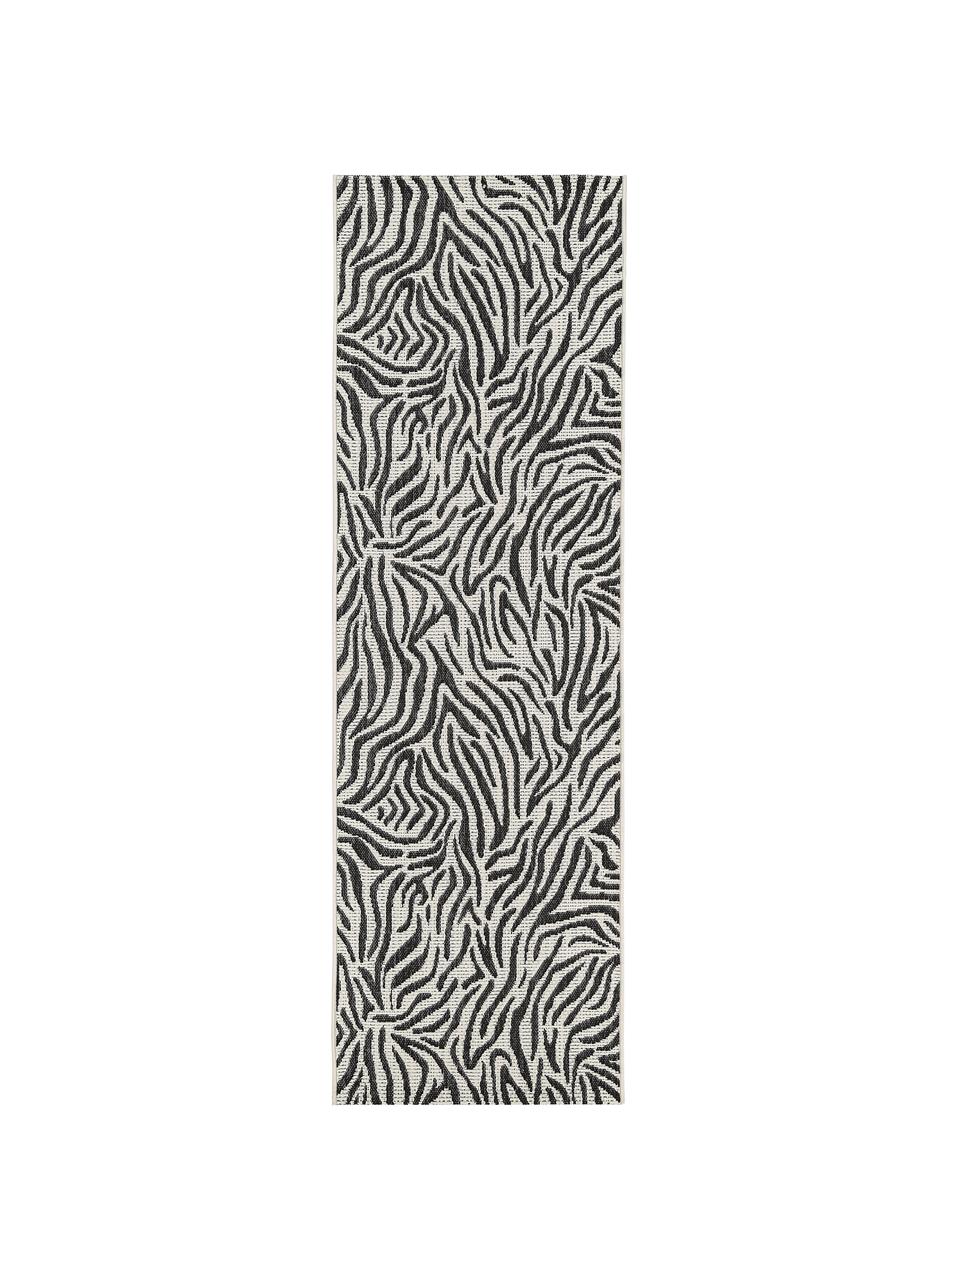 In- & Outdoor-Läufer Exotic mit Zebra Print, Flor: 100% Polypropylen, Cremeweiss, Schwarz, 80 x 250 cm